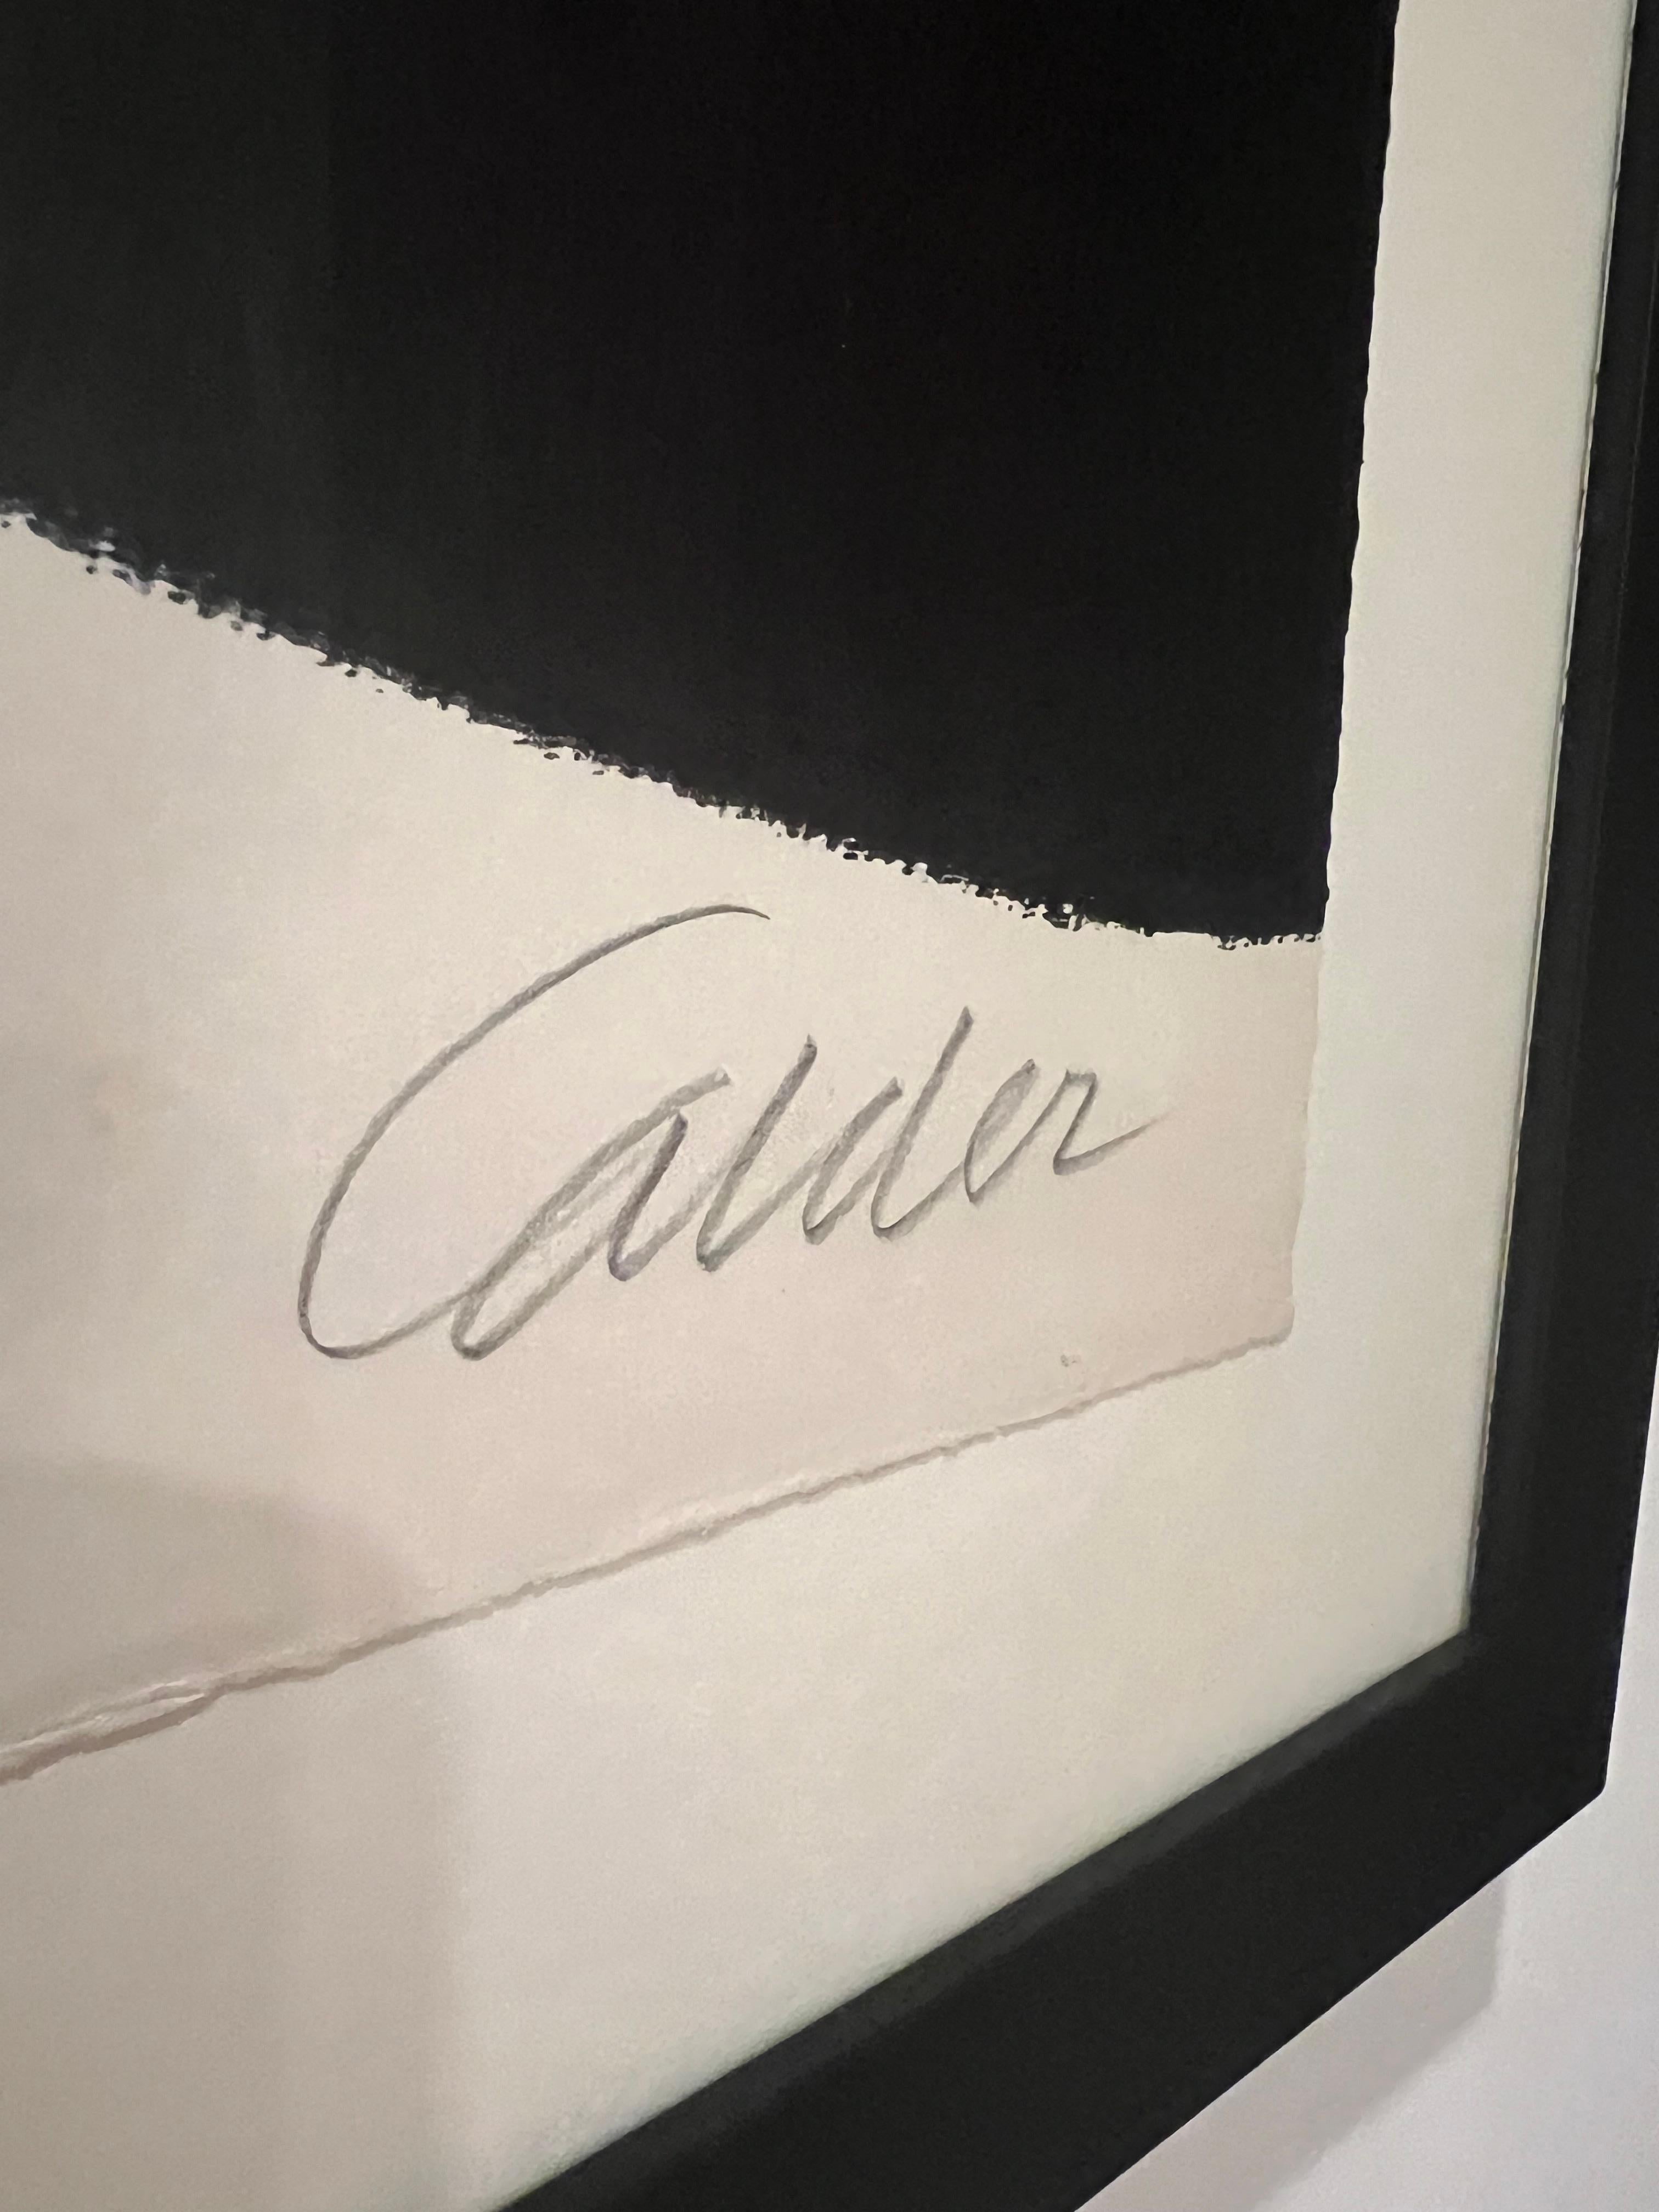 Fleur d'Helice, 1969
Farblithographie auf Chiffon de Mandeure Papier
Maeght Editeur, Paris
29,5 x 43,3 Zoll 
Signiert und nummeriert mit Bleistift, Auflage 75 Exemplare
Professionell gerahmt unter Museumsglas

Alexander Calder wurde 1898 in